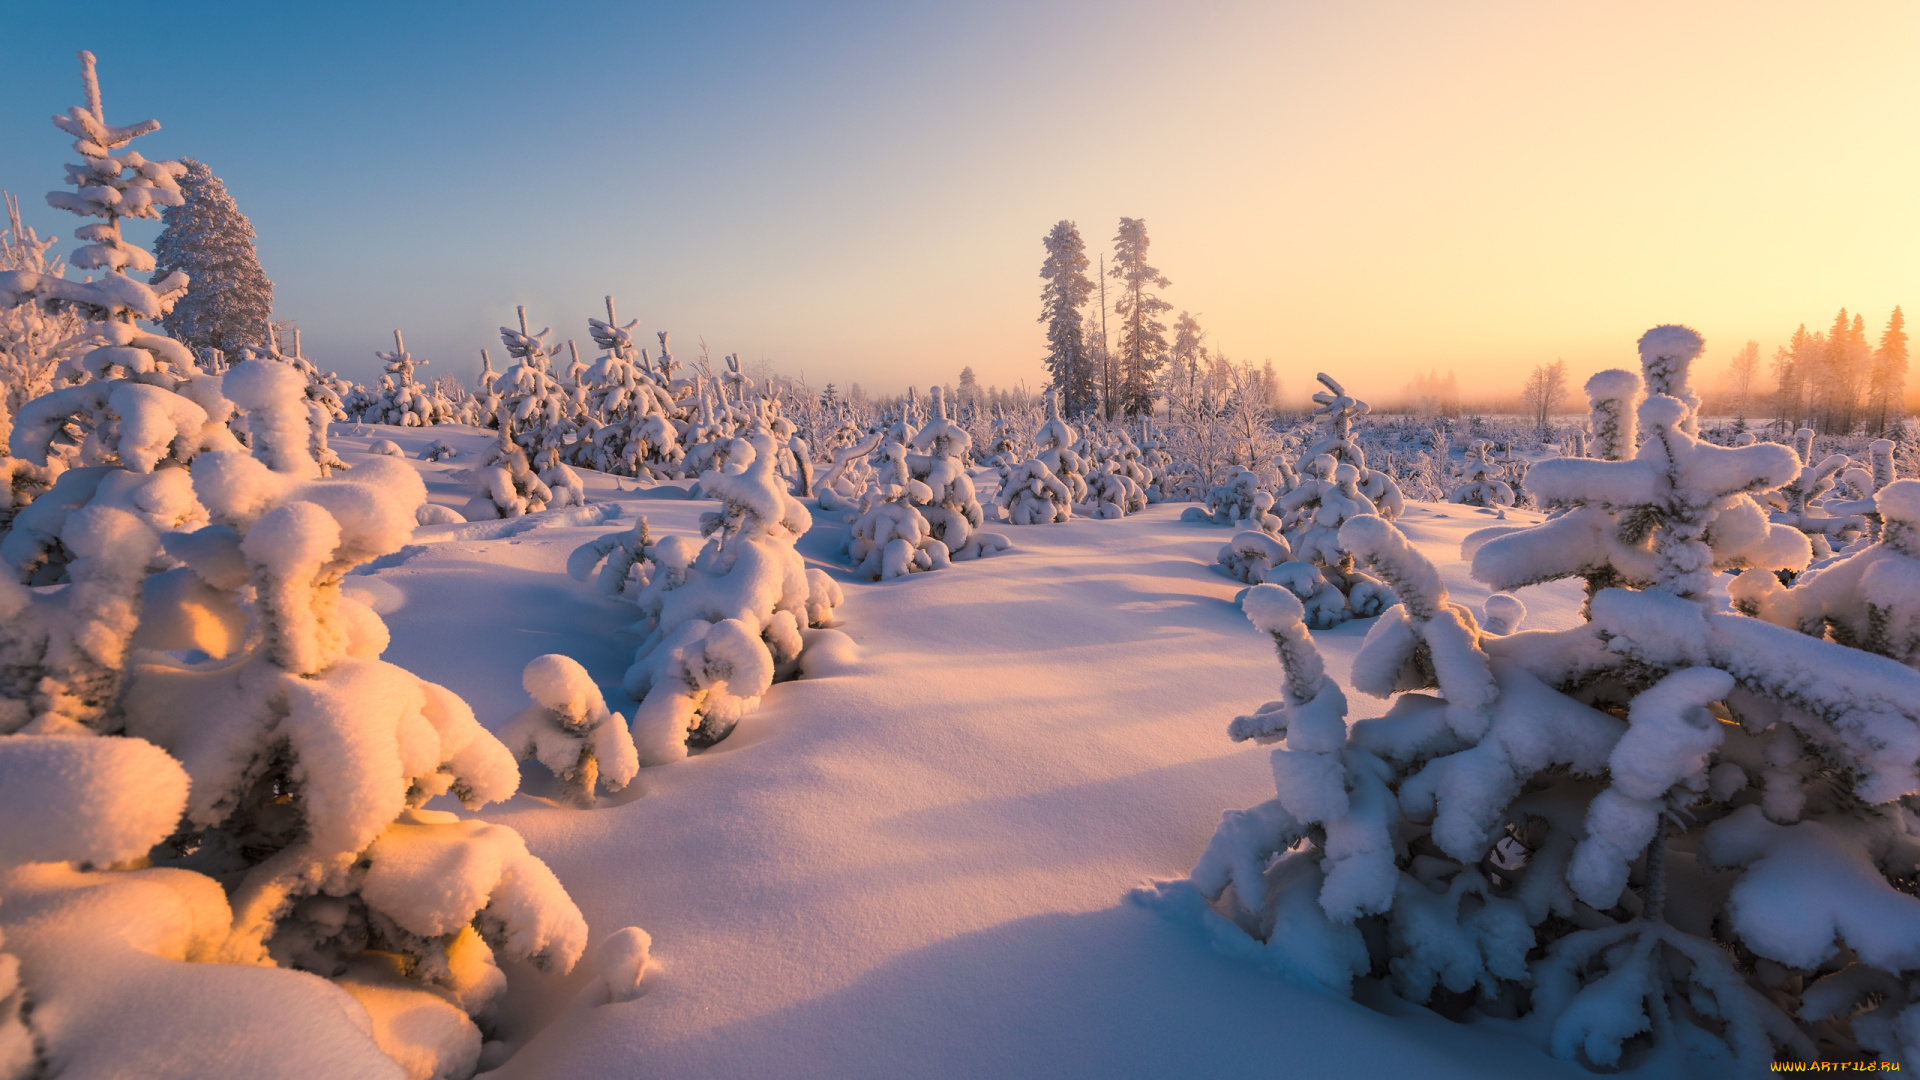 природа, зима, финляндия, снег, пейзаж, деревца, ёлочки